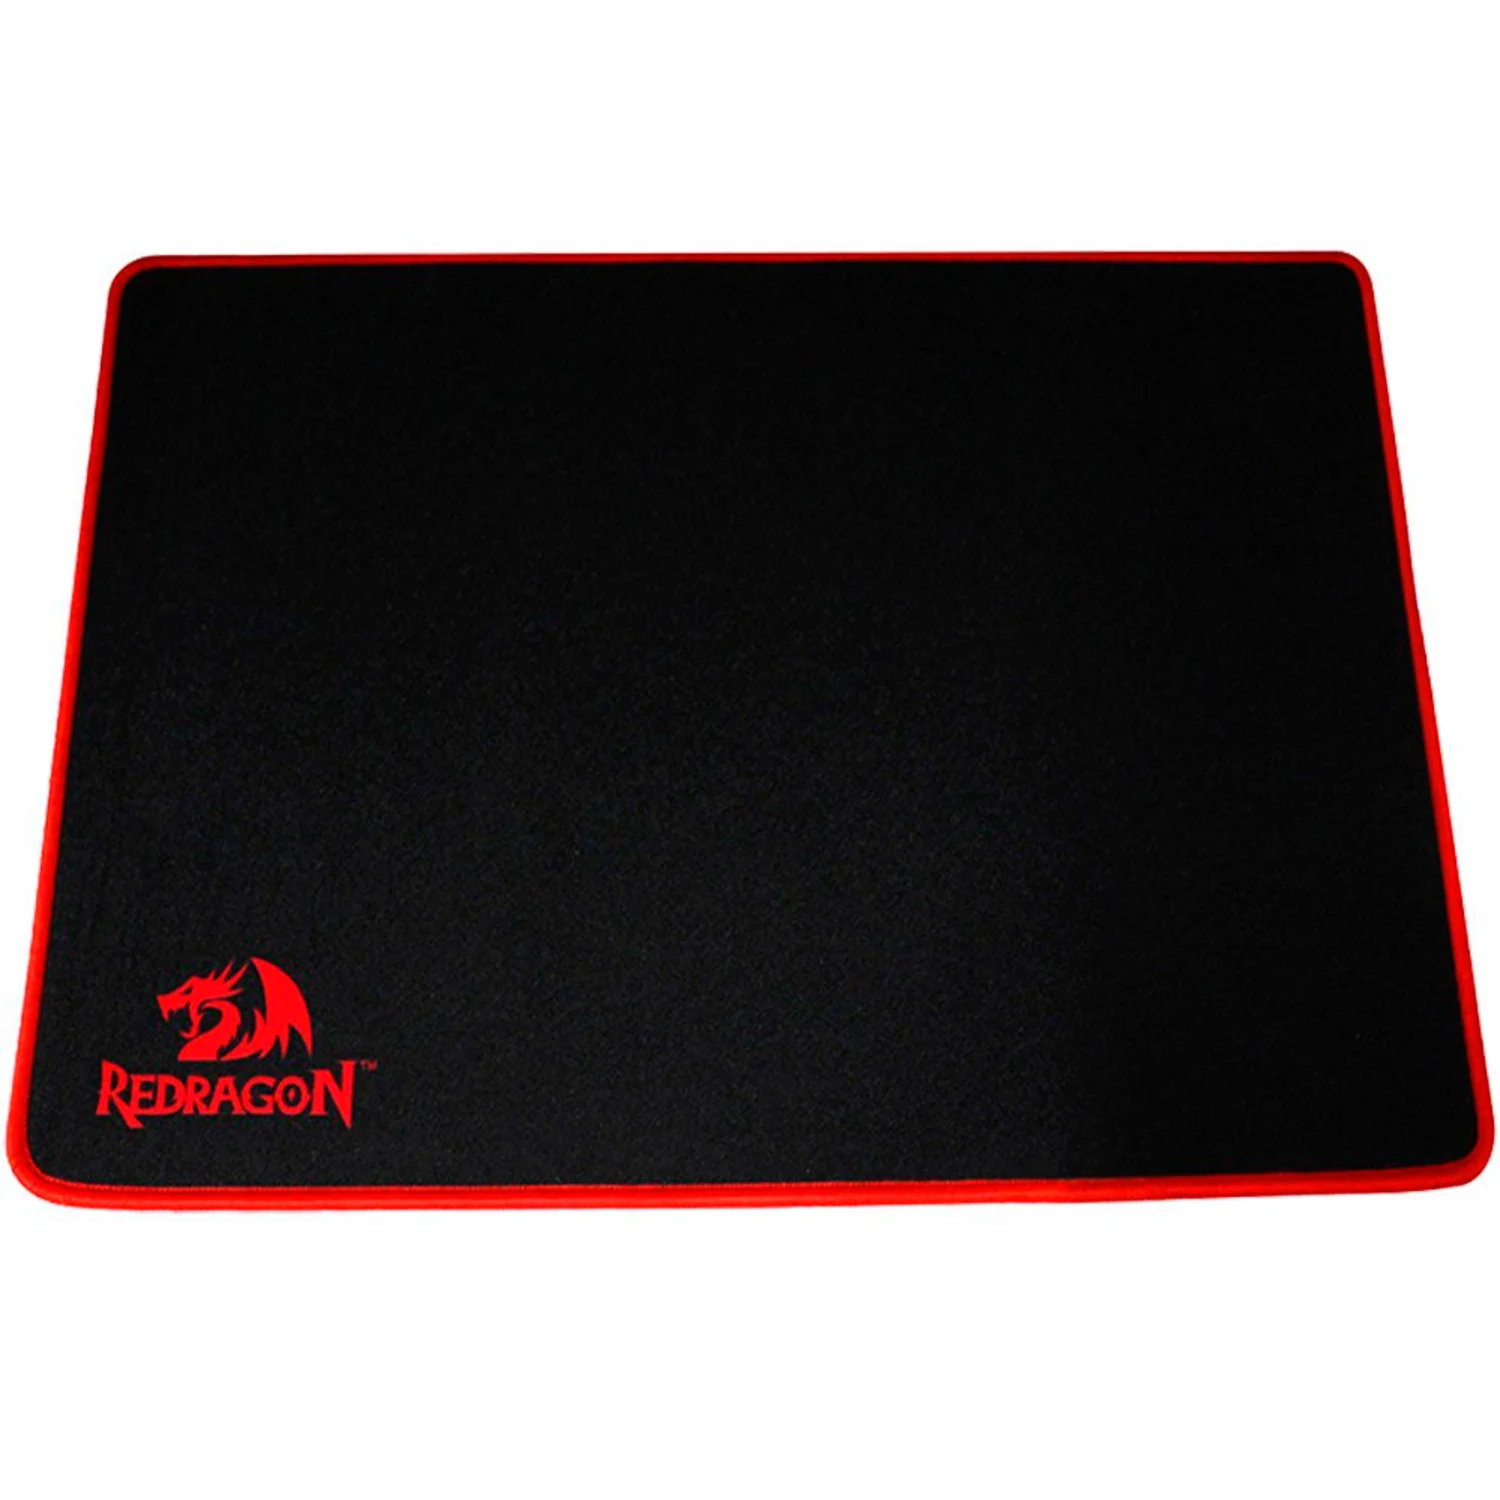 Mousepad Gamer Redragon Archelon Large P002 - Preto